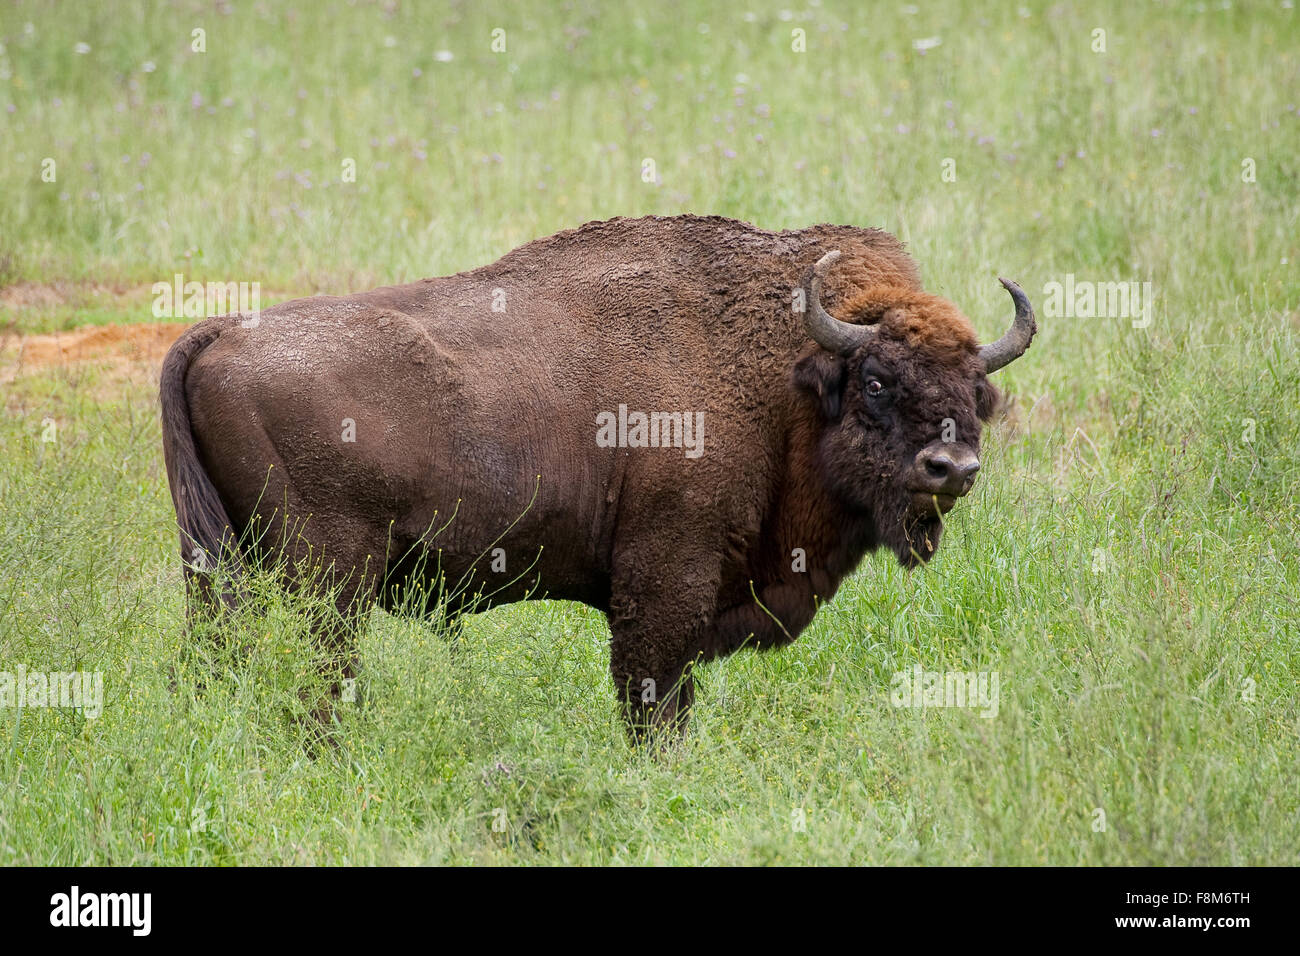 Il bisonte europeo, wisent, legno europea bison, maschio, Wisent, Männchen, Bulle, Europäisches Bison Bison bonasus, Wildrind Foto Stock